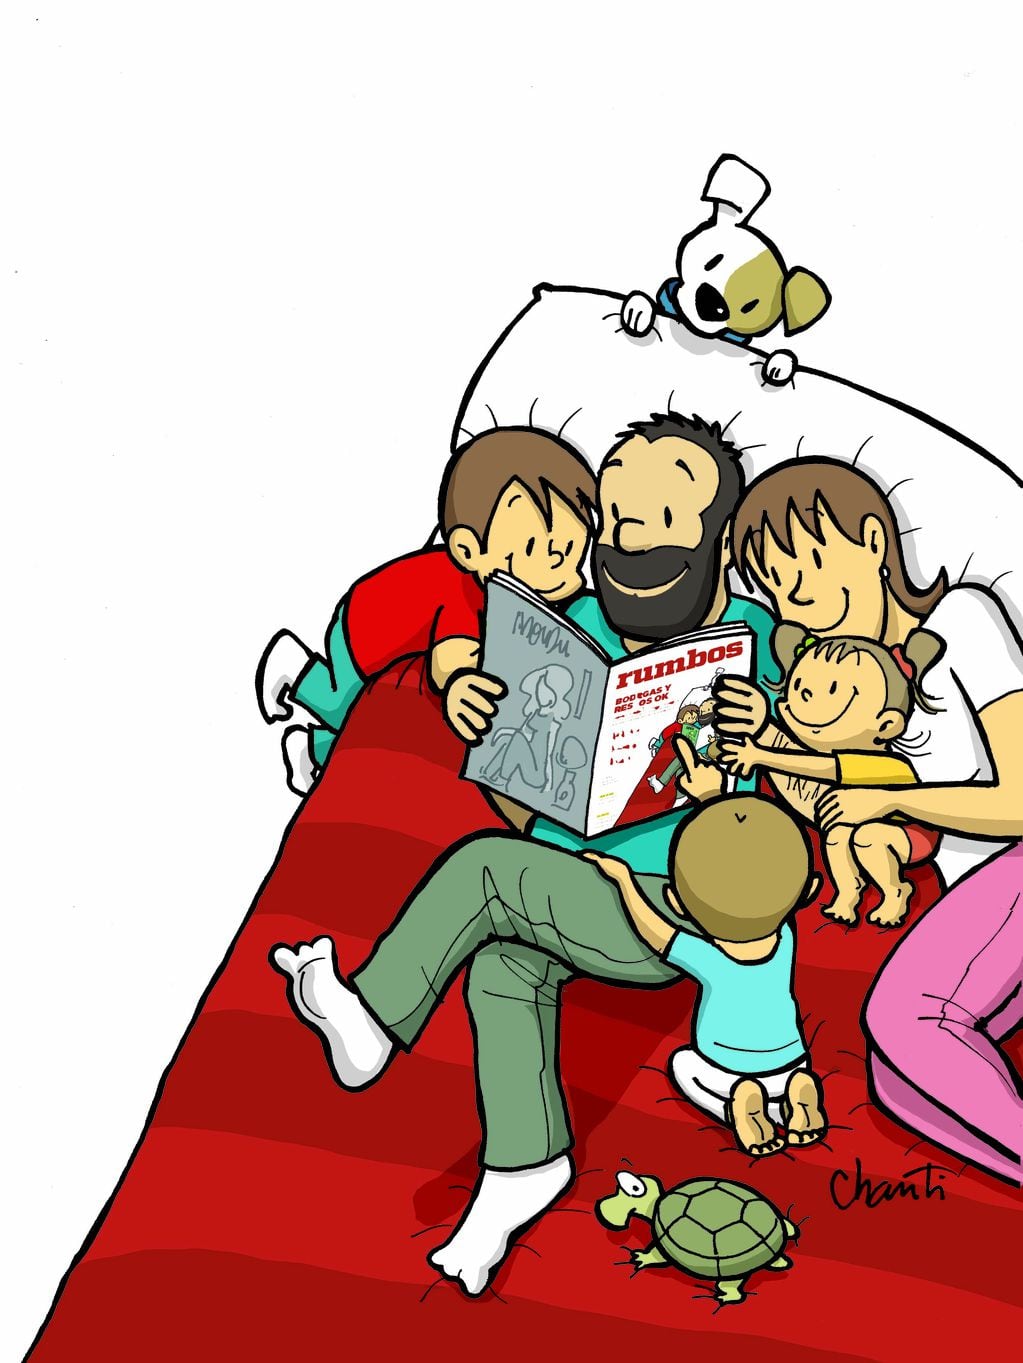 La familia más linda de la historieta argentina comparte un lindo momento leyéndose en Rumbos.